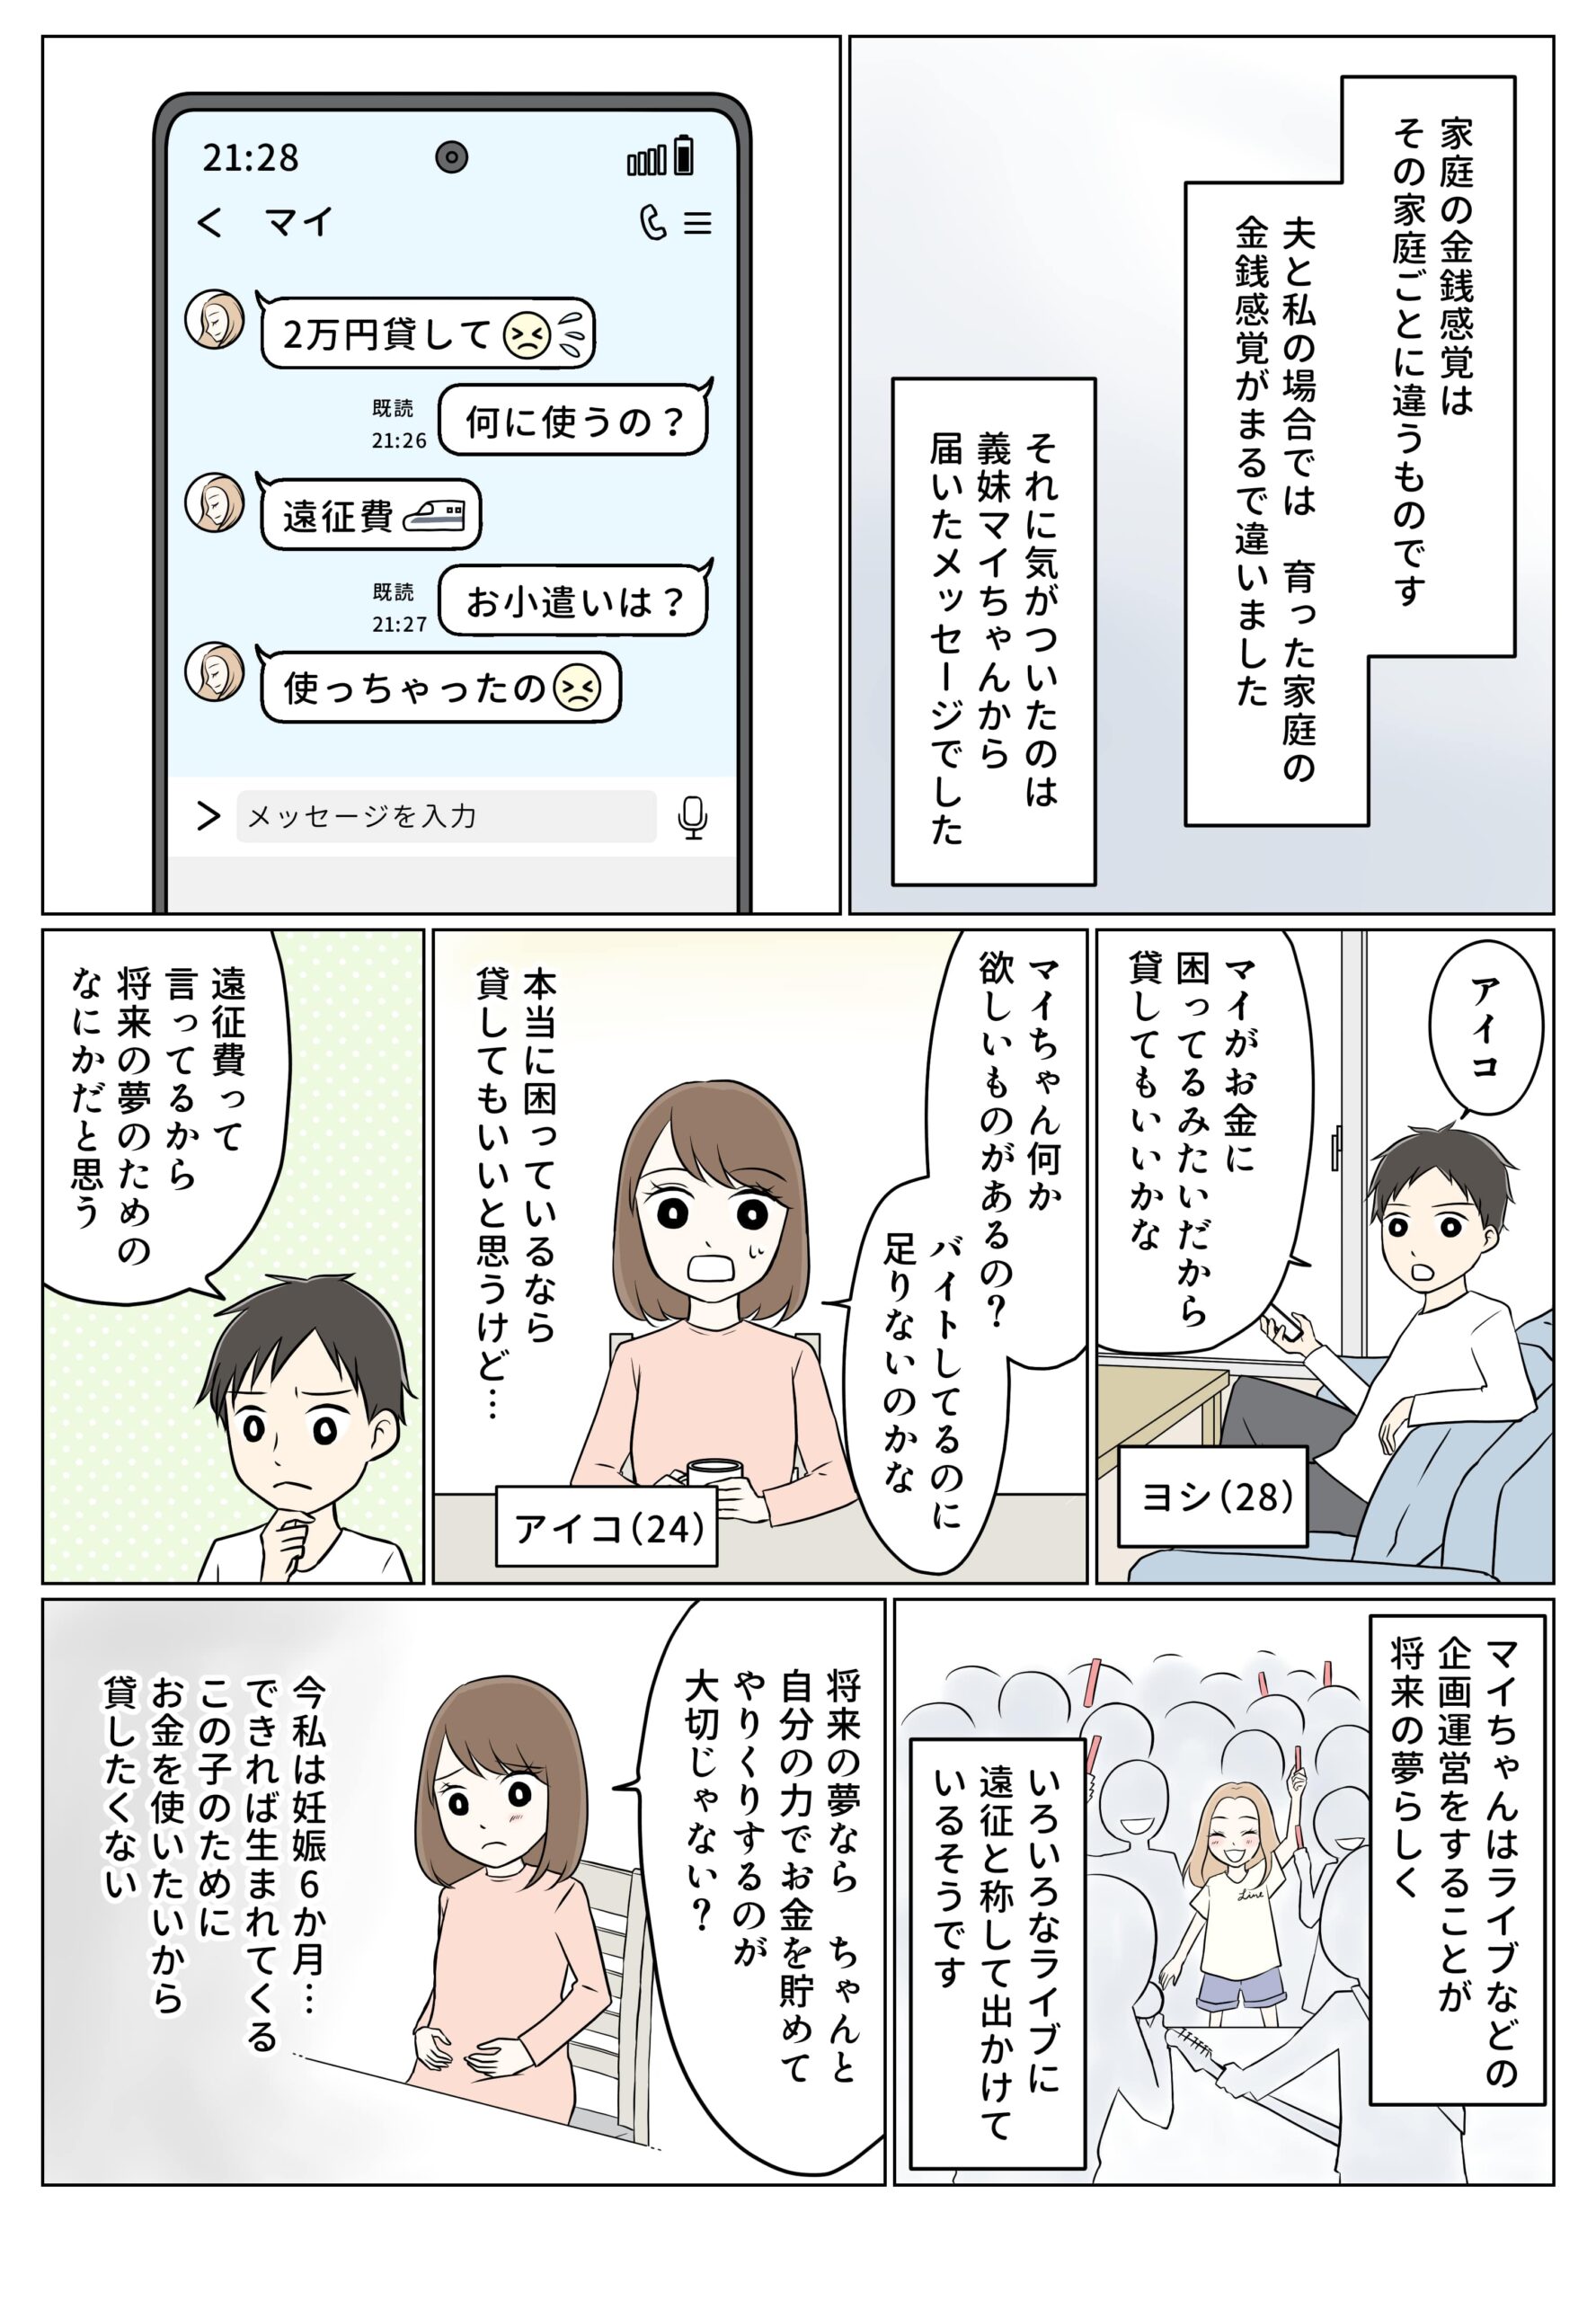 【コネヒト株式会社様】WEBメディア「ママリ」短期連載（作画担当）